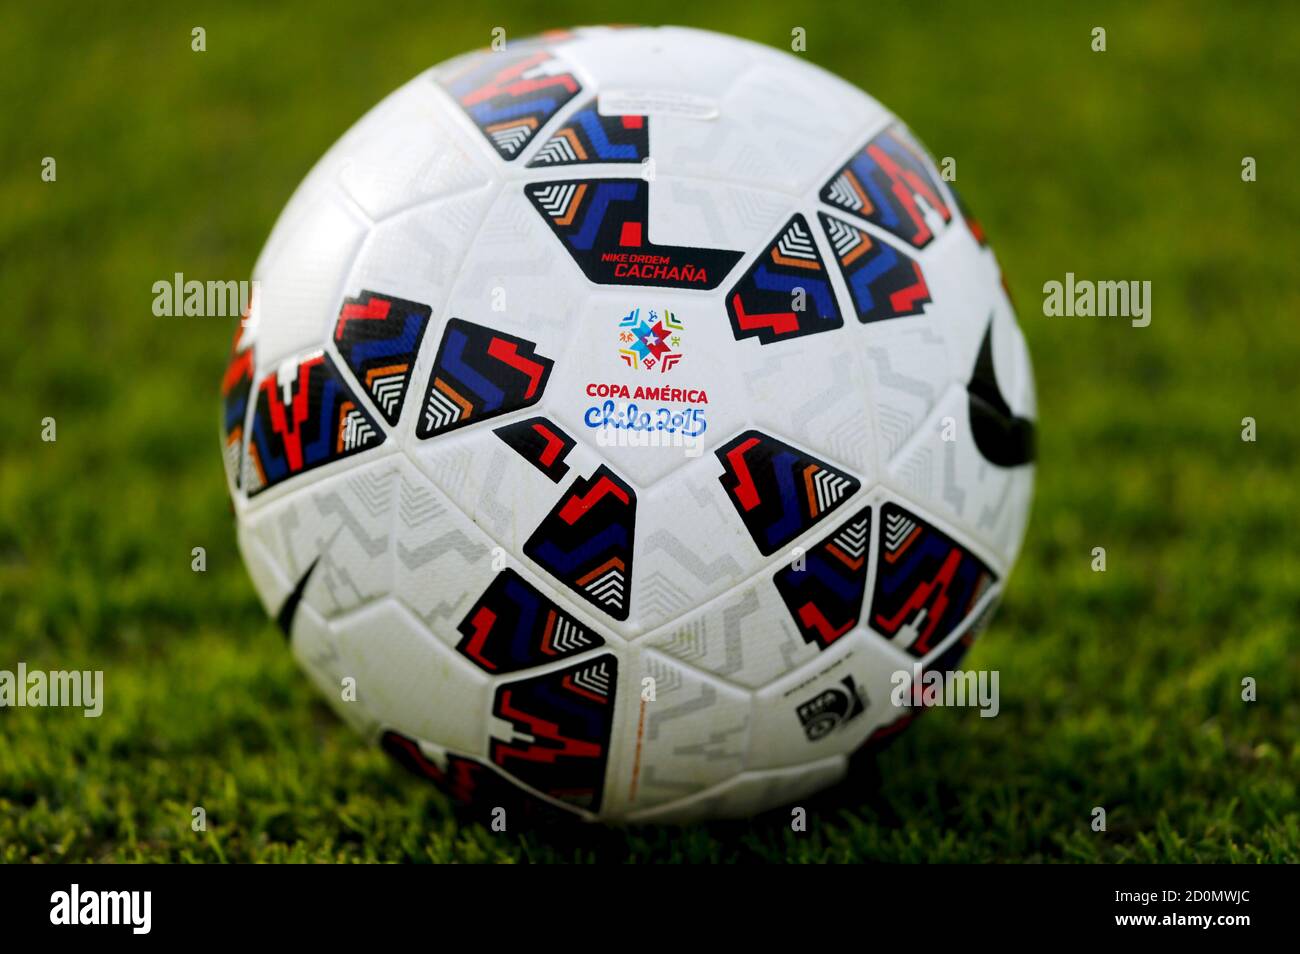 La Nike Cachana, le ballon de football officiel de Copa America 2015 au  Chili, est vue lors de la séance d'entraînement d'équipe en Argentine à  Buenos Aires, Argentine, le 1er juin 2015.